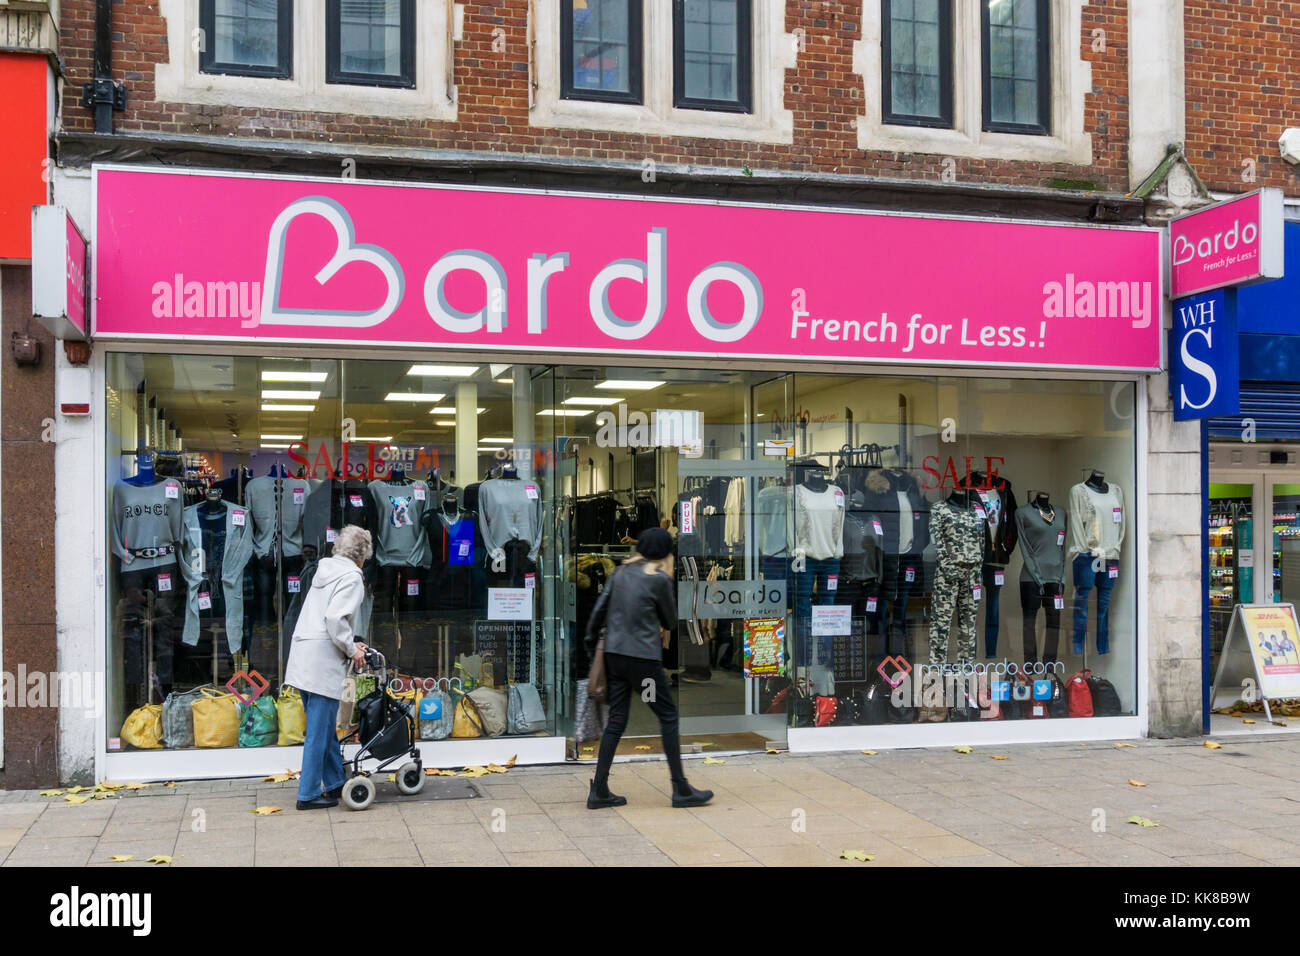 Das Bardo Frauen kleidung shop in Croydon wirbt Französisch für weniger.! Stockfoto